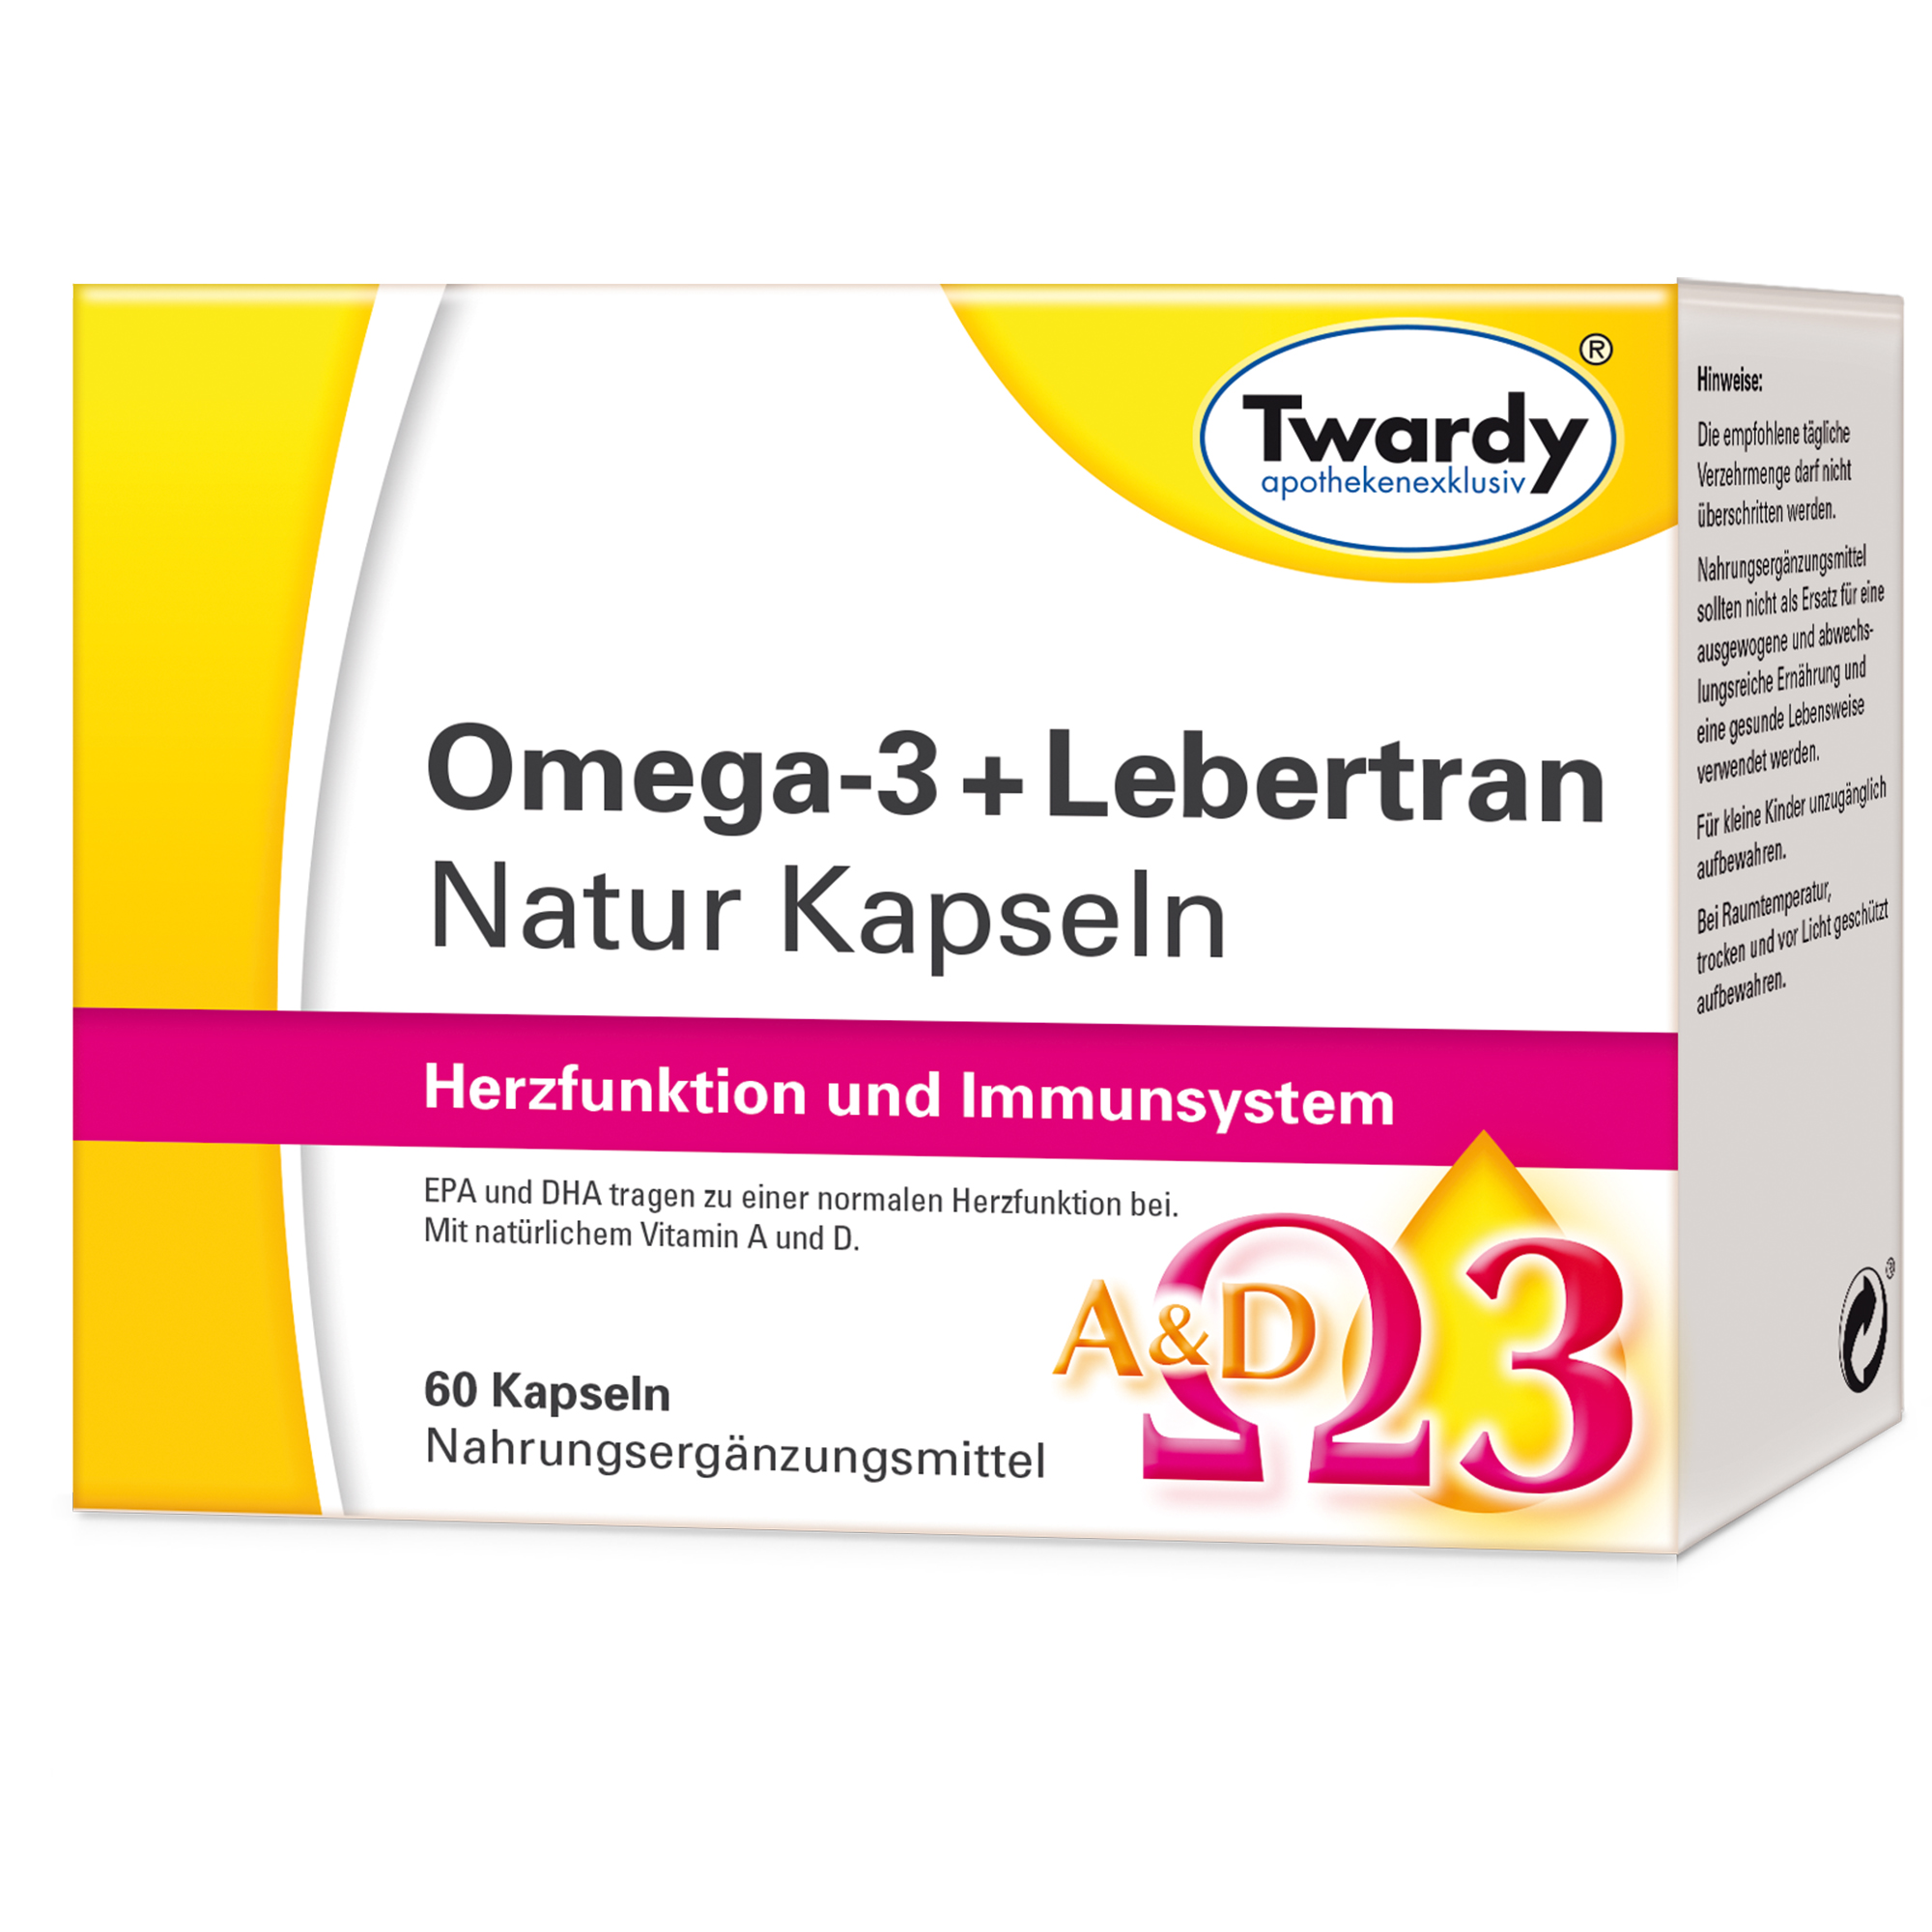 Omega-3+Lebertran Natur Kapseln – PZN 16782246